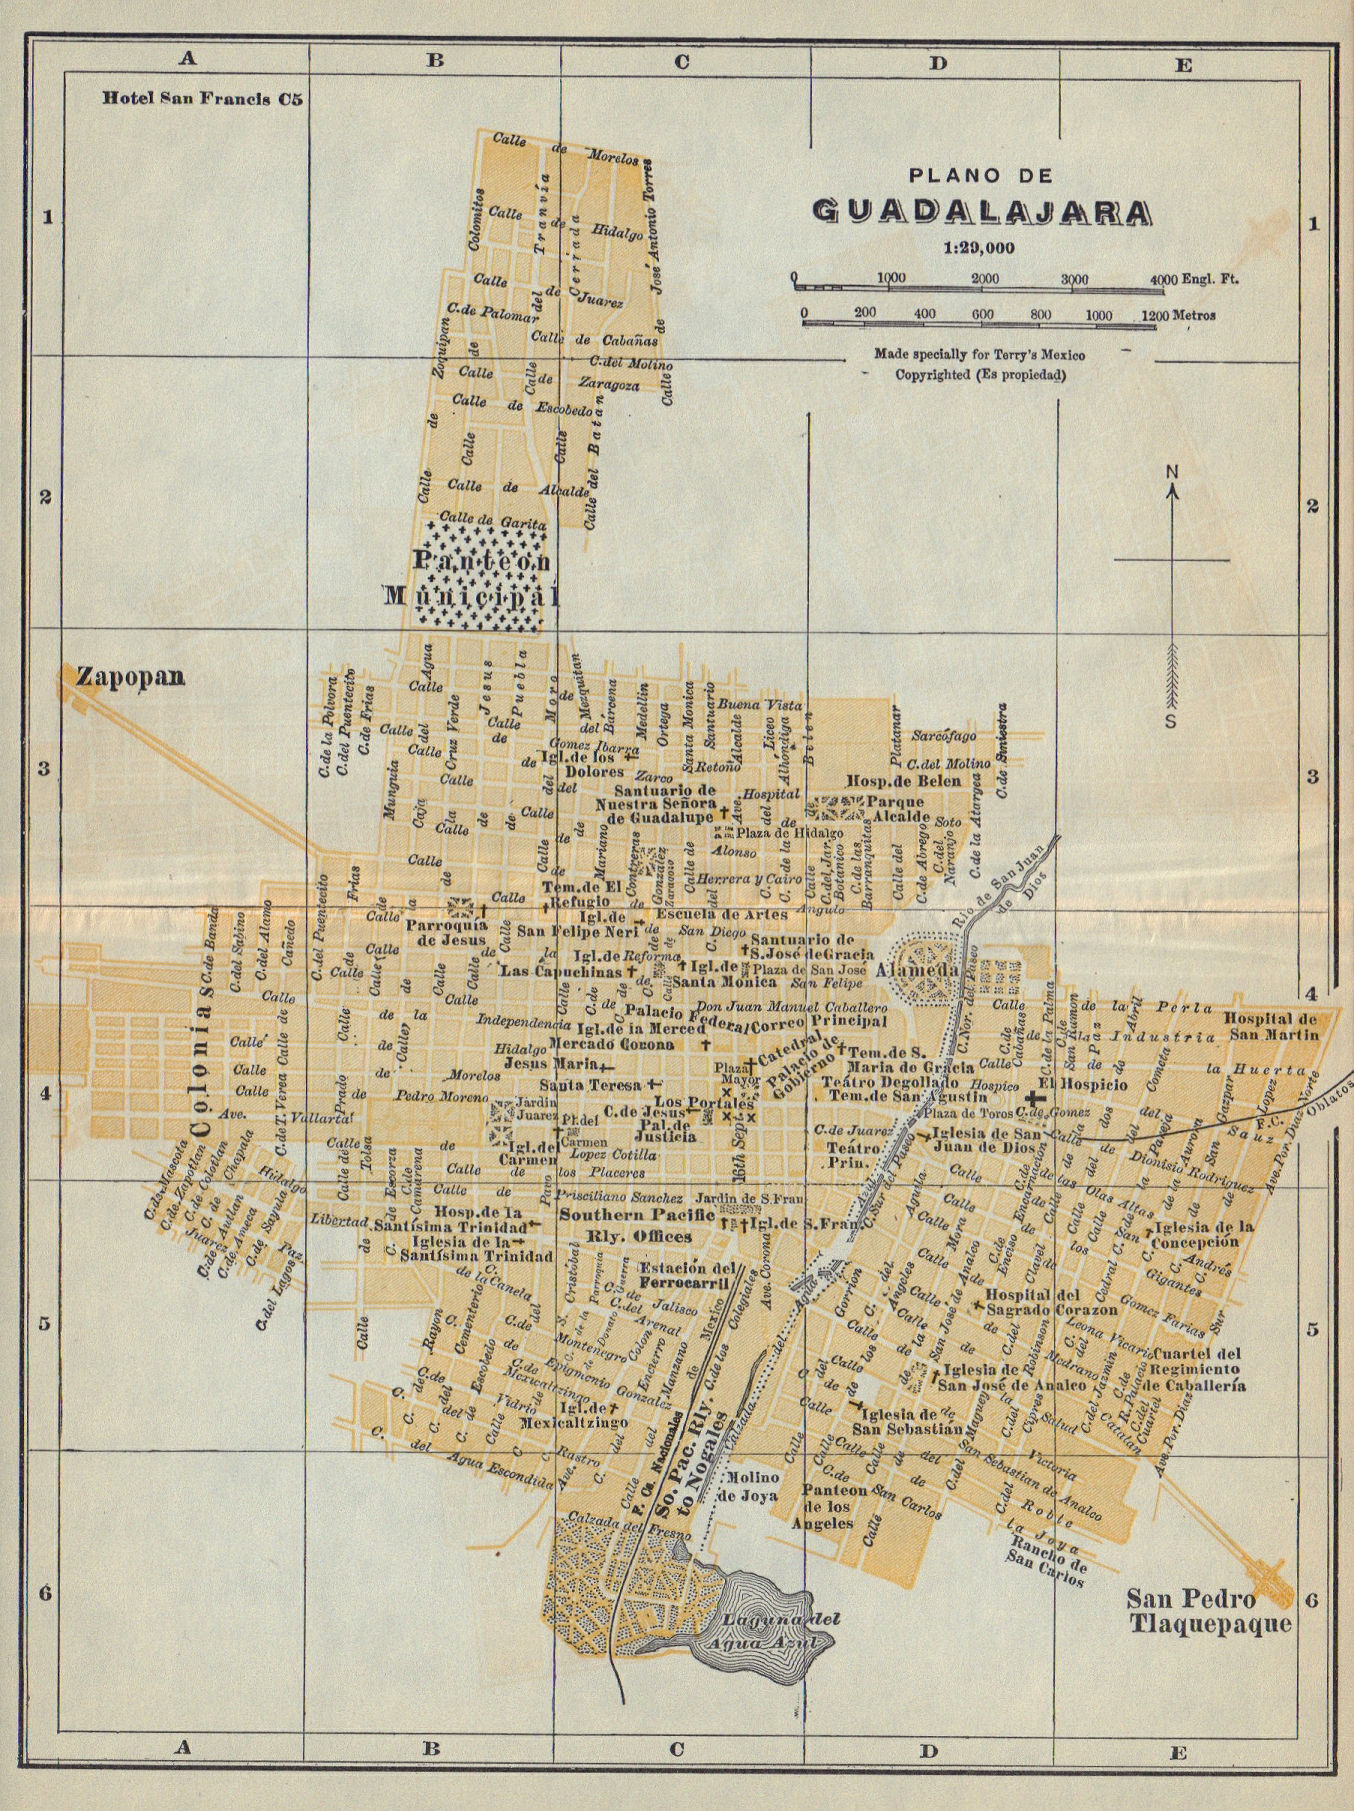 Plano de GUADALAJARA, Mexico. Mapa de la ciudad. City/town plan 1938 old